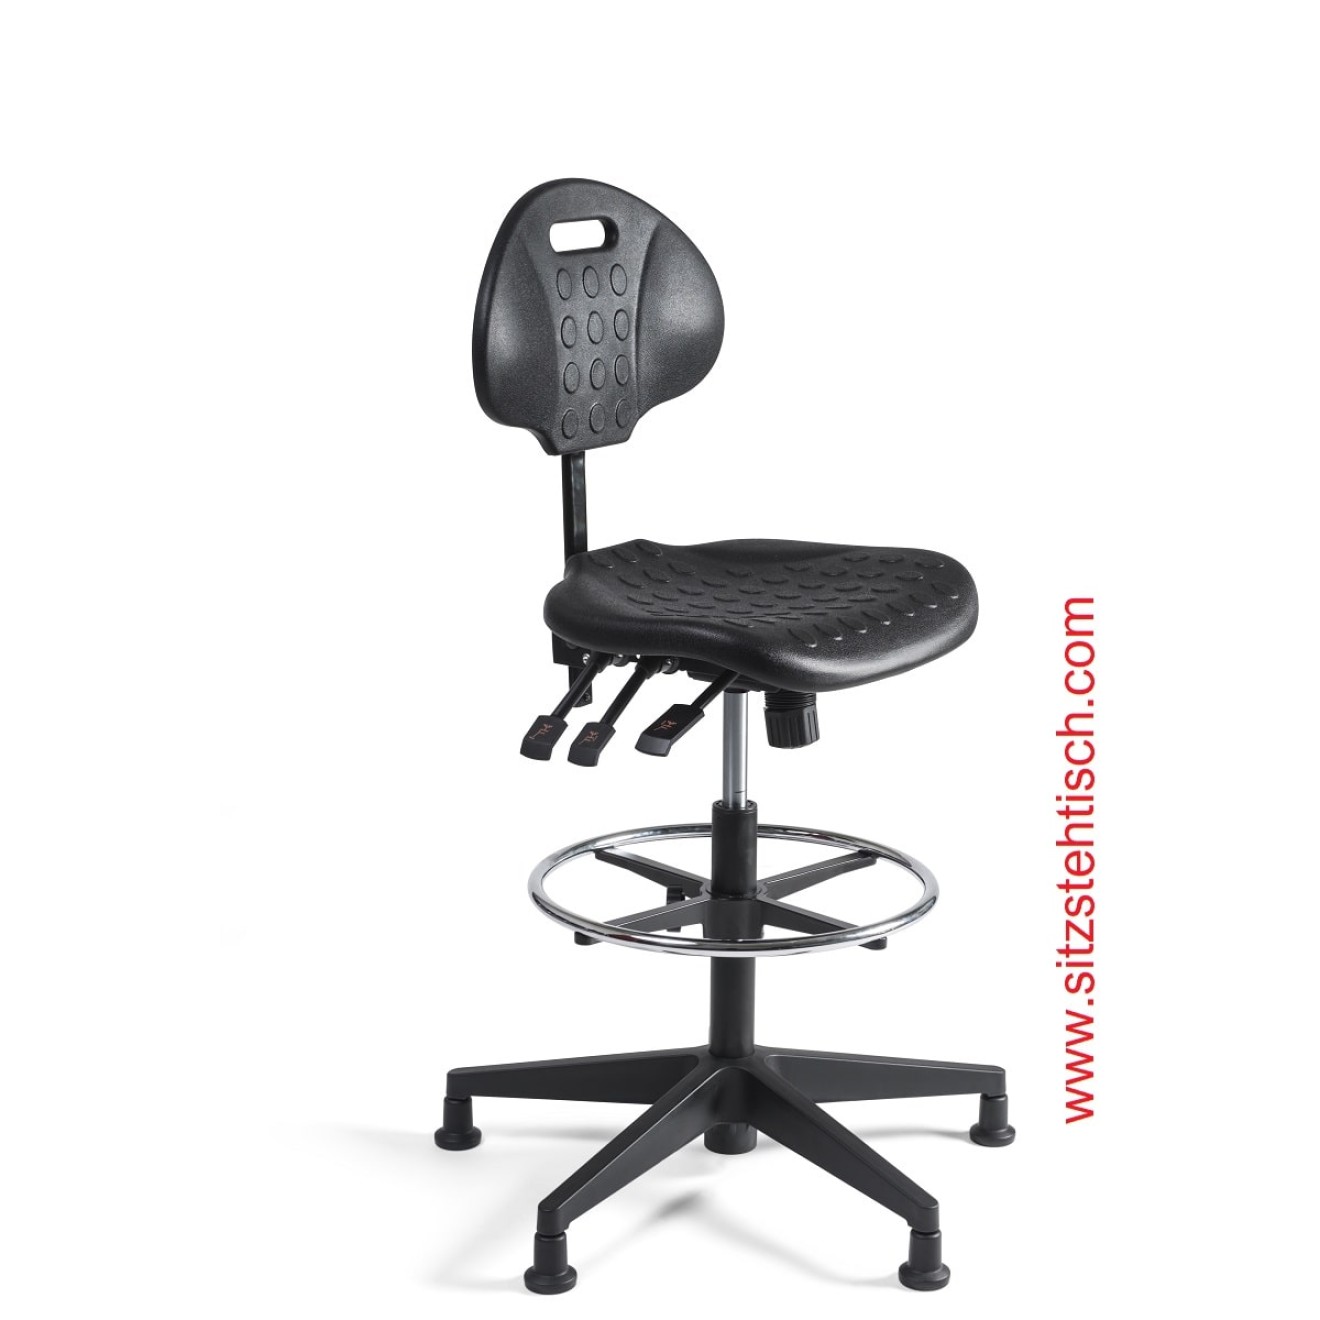 Arbeitsstuhl hoch - Rücken- und Sitzwinkelverstellung - Sitz- und Rücken aus PU Schaum schwarz - Fußkreuz Kunststoff mit Gleiter - 5 Jahre Garantie -100257